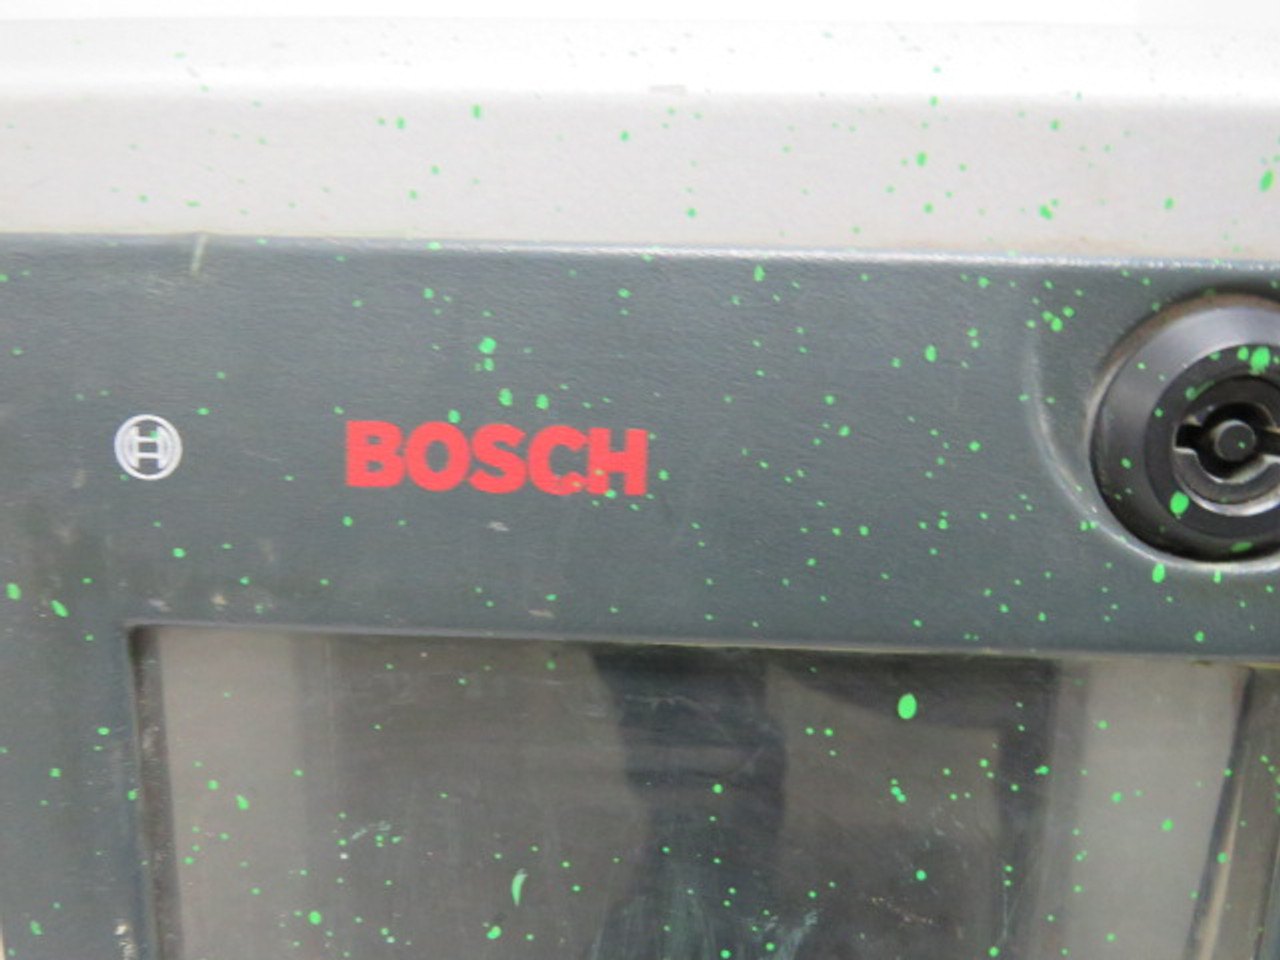 Bosch 0-608-830-206 Tightening System 230-1200VA USED